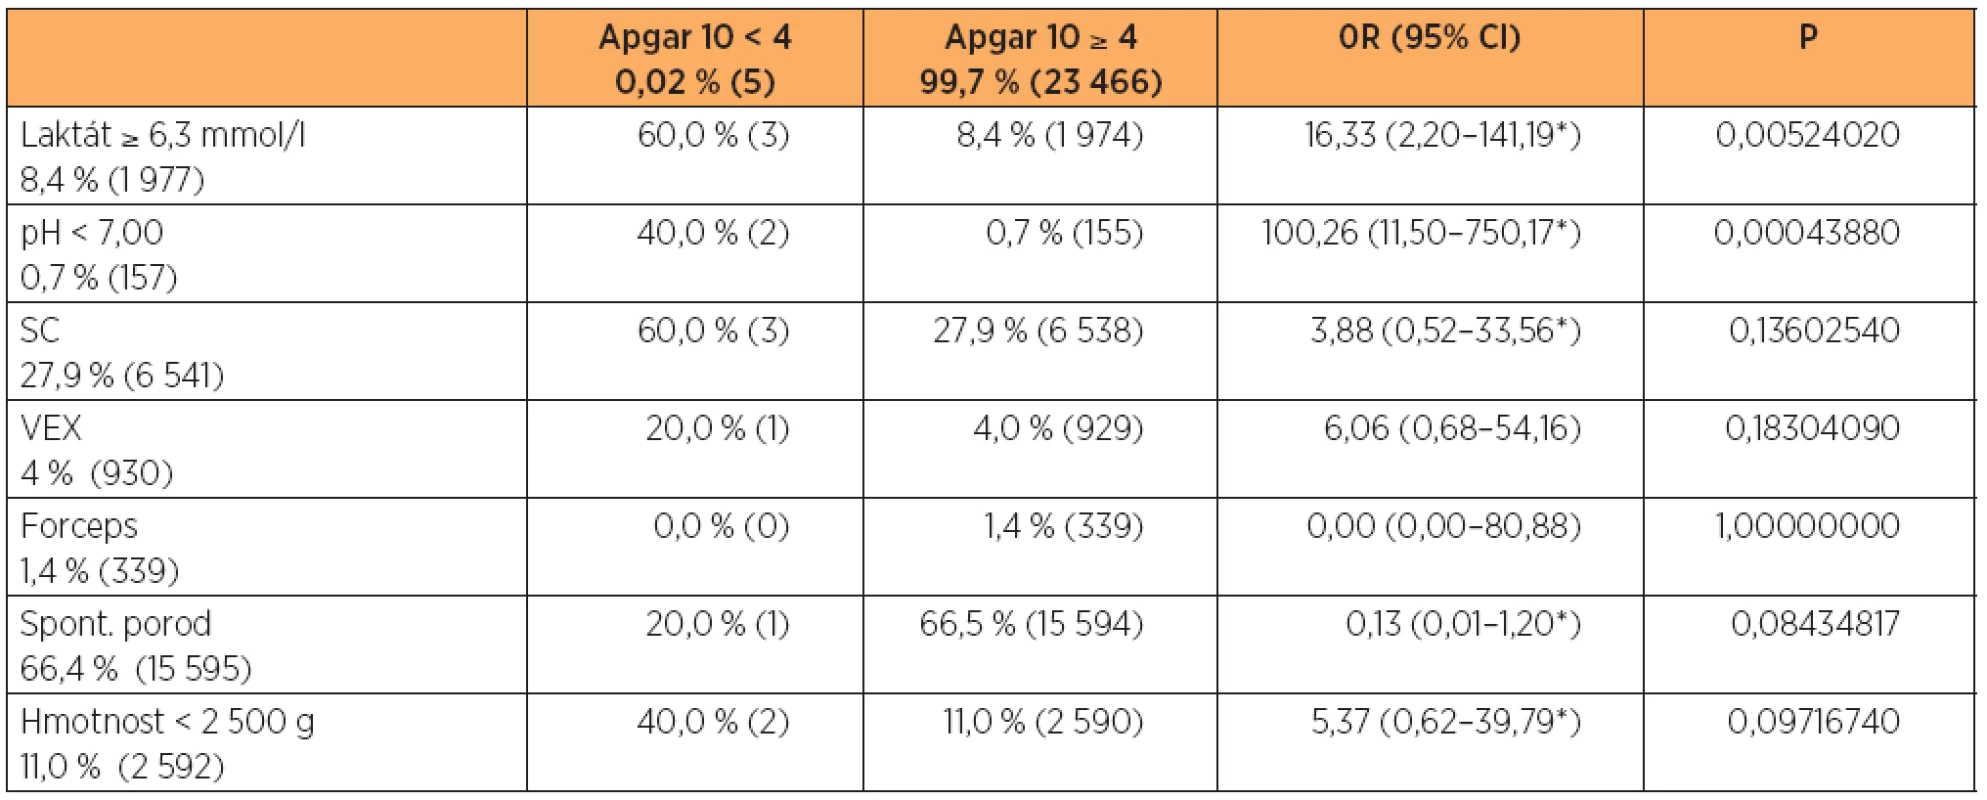 Vztah vybraných charakteristik k hodnocení Apgarové méně než 4 body za 10 minut po porodu